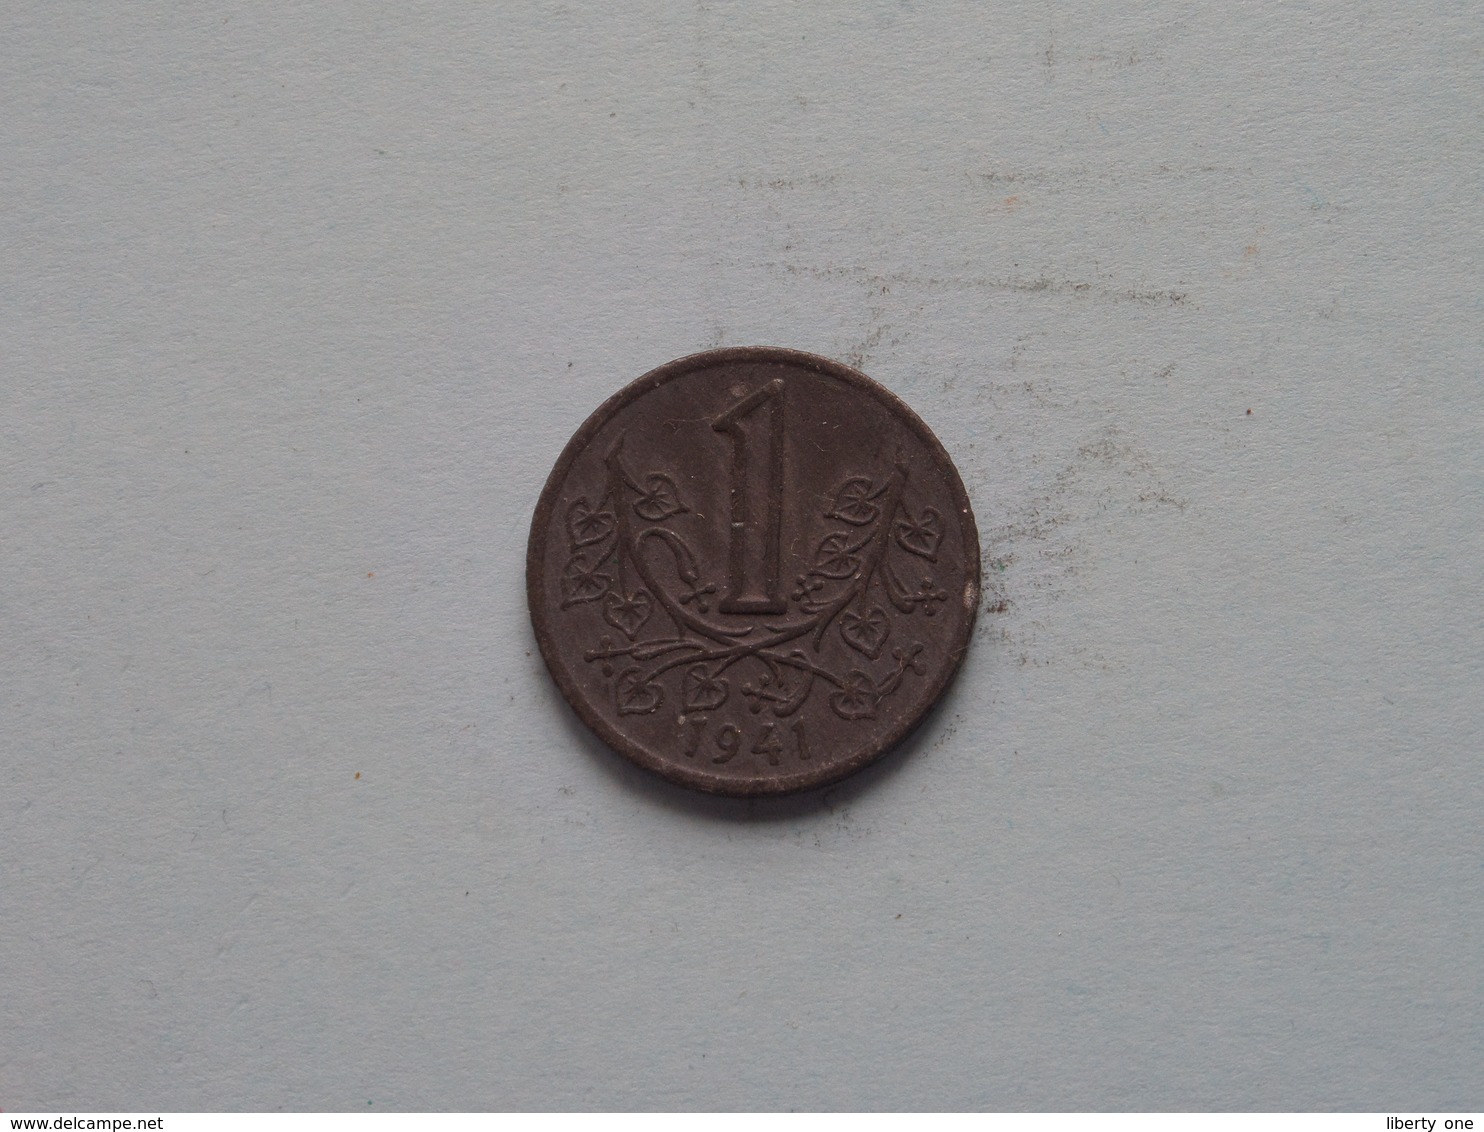 Böhmen Und Mähren 1941 - Koruna / KM 4 ( Uncleaned Coin / For Grade, Please See Photo ) !! - Tschechische Rep.